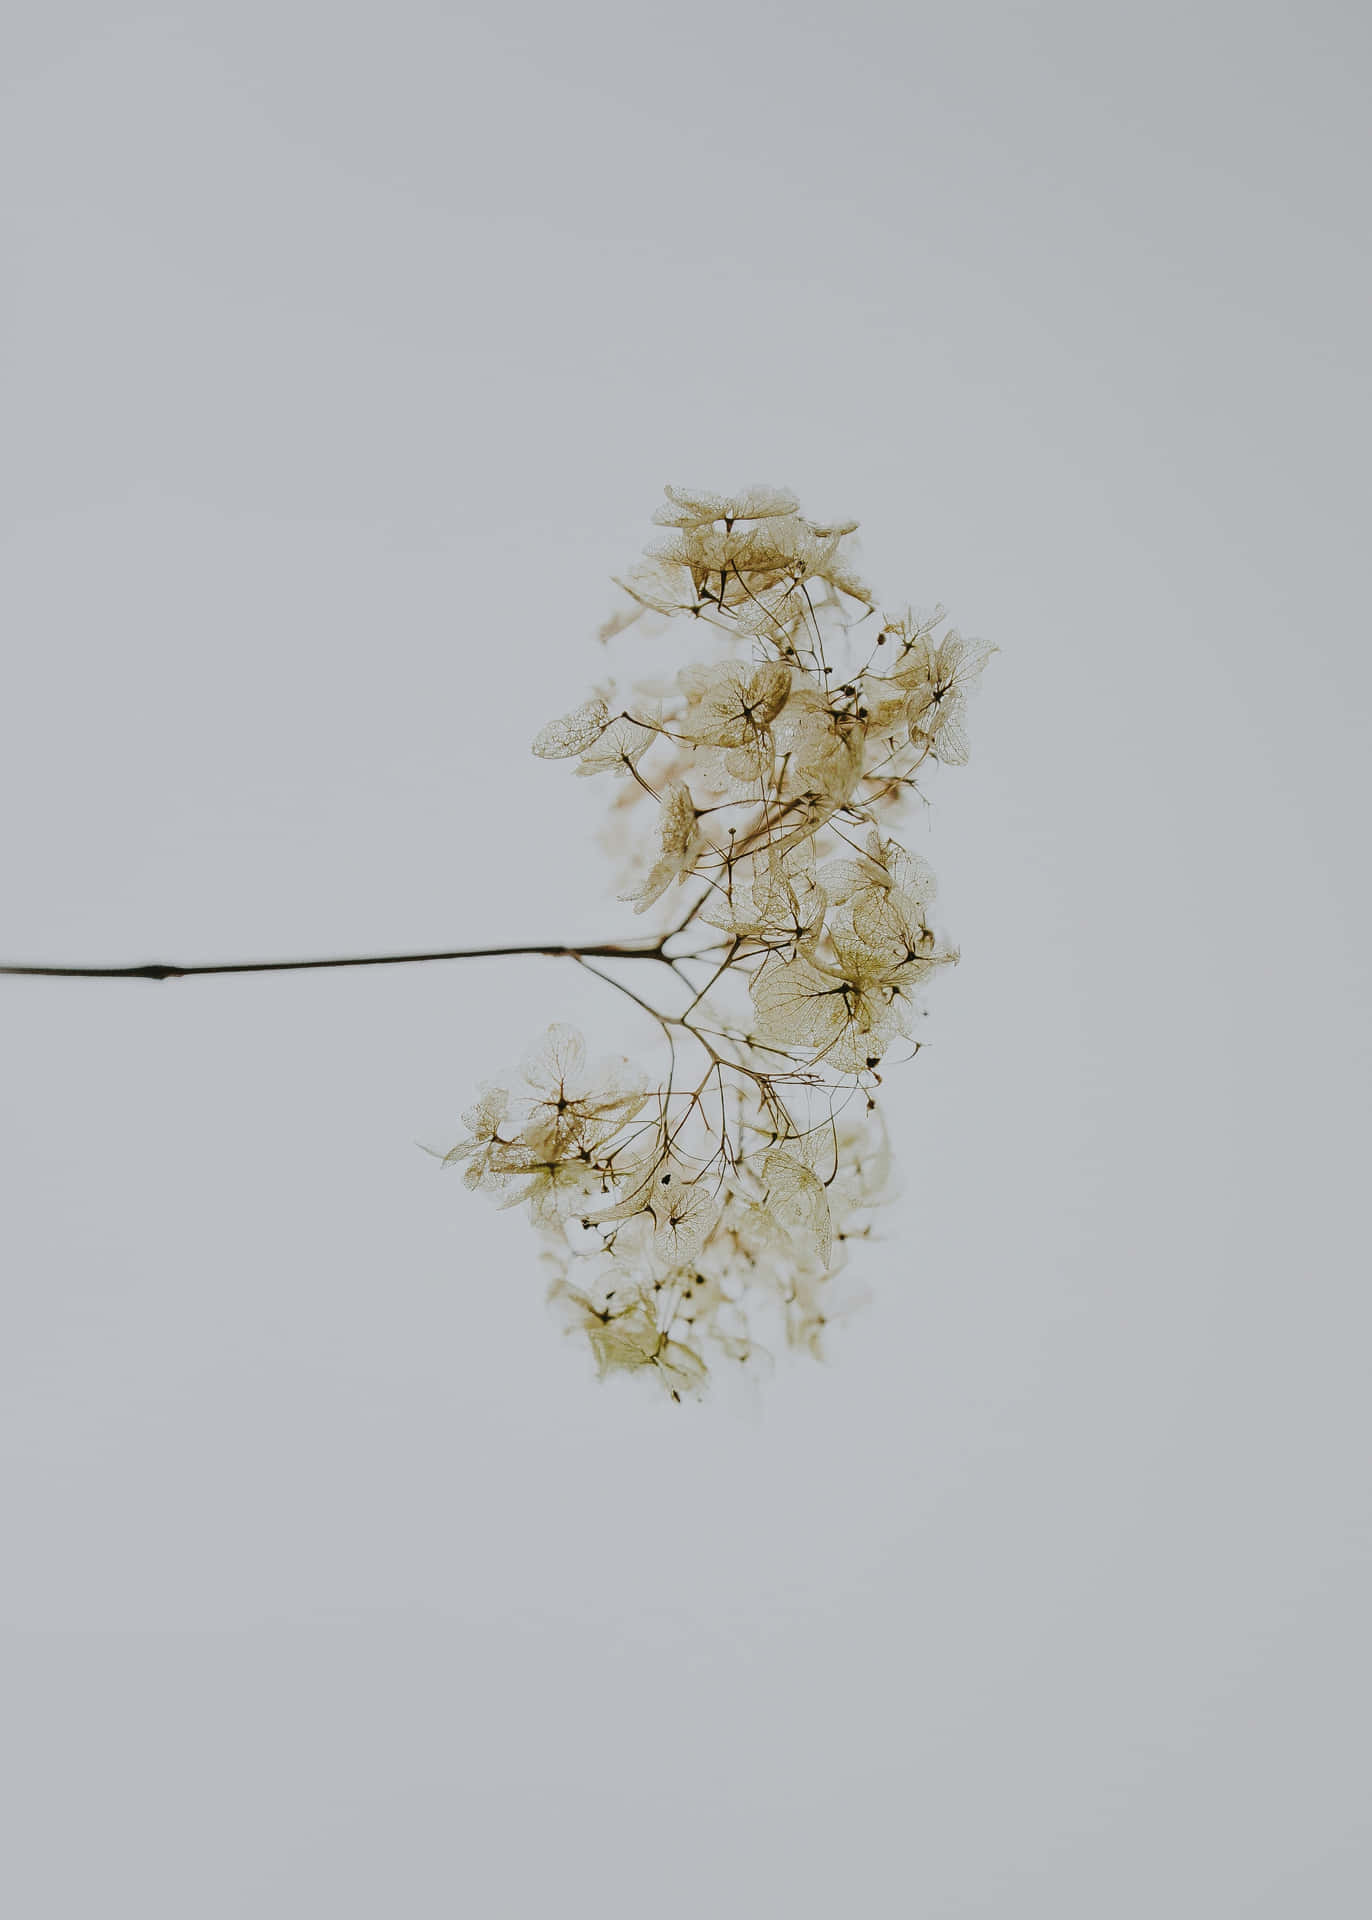 Minimalist White Flower Aesthetic.jpg Wallpaper